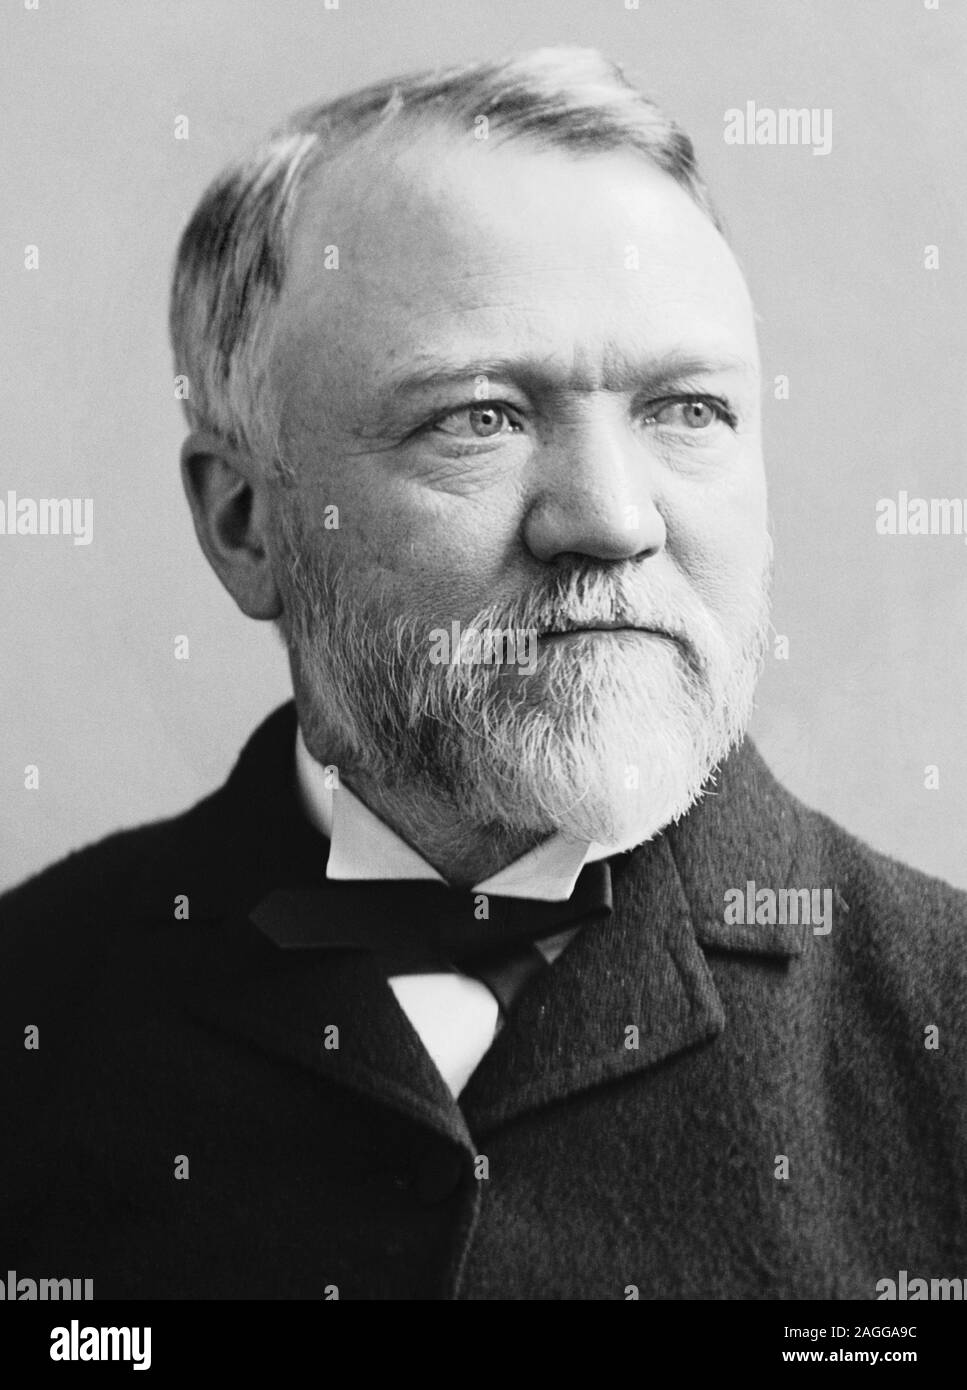 Vintage Portraitfoto von Scottish - amerikanische Industrieller und Philanthrop Andrew Carnegie (1835 - 1919). Foto ca. 1880 von Brady-Handy. Stockfoto